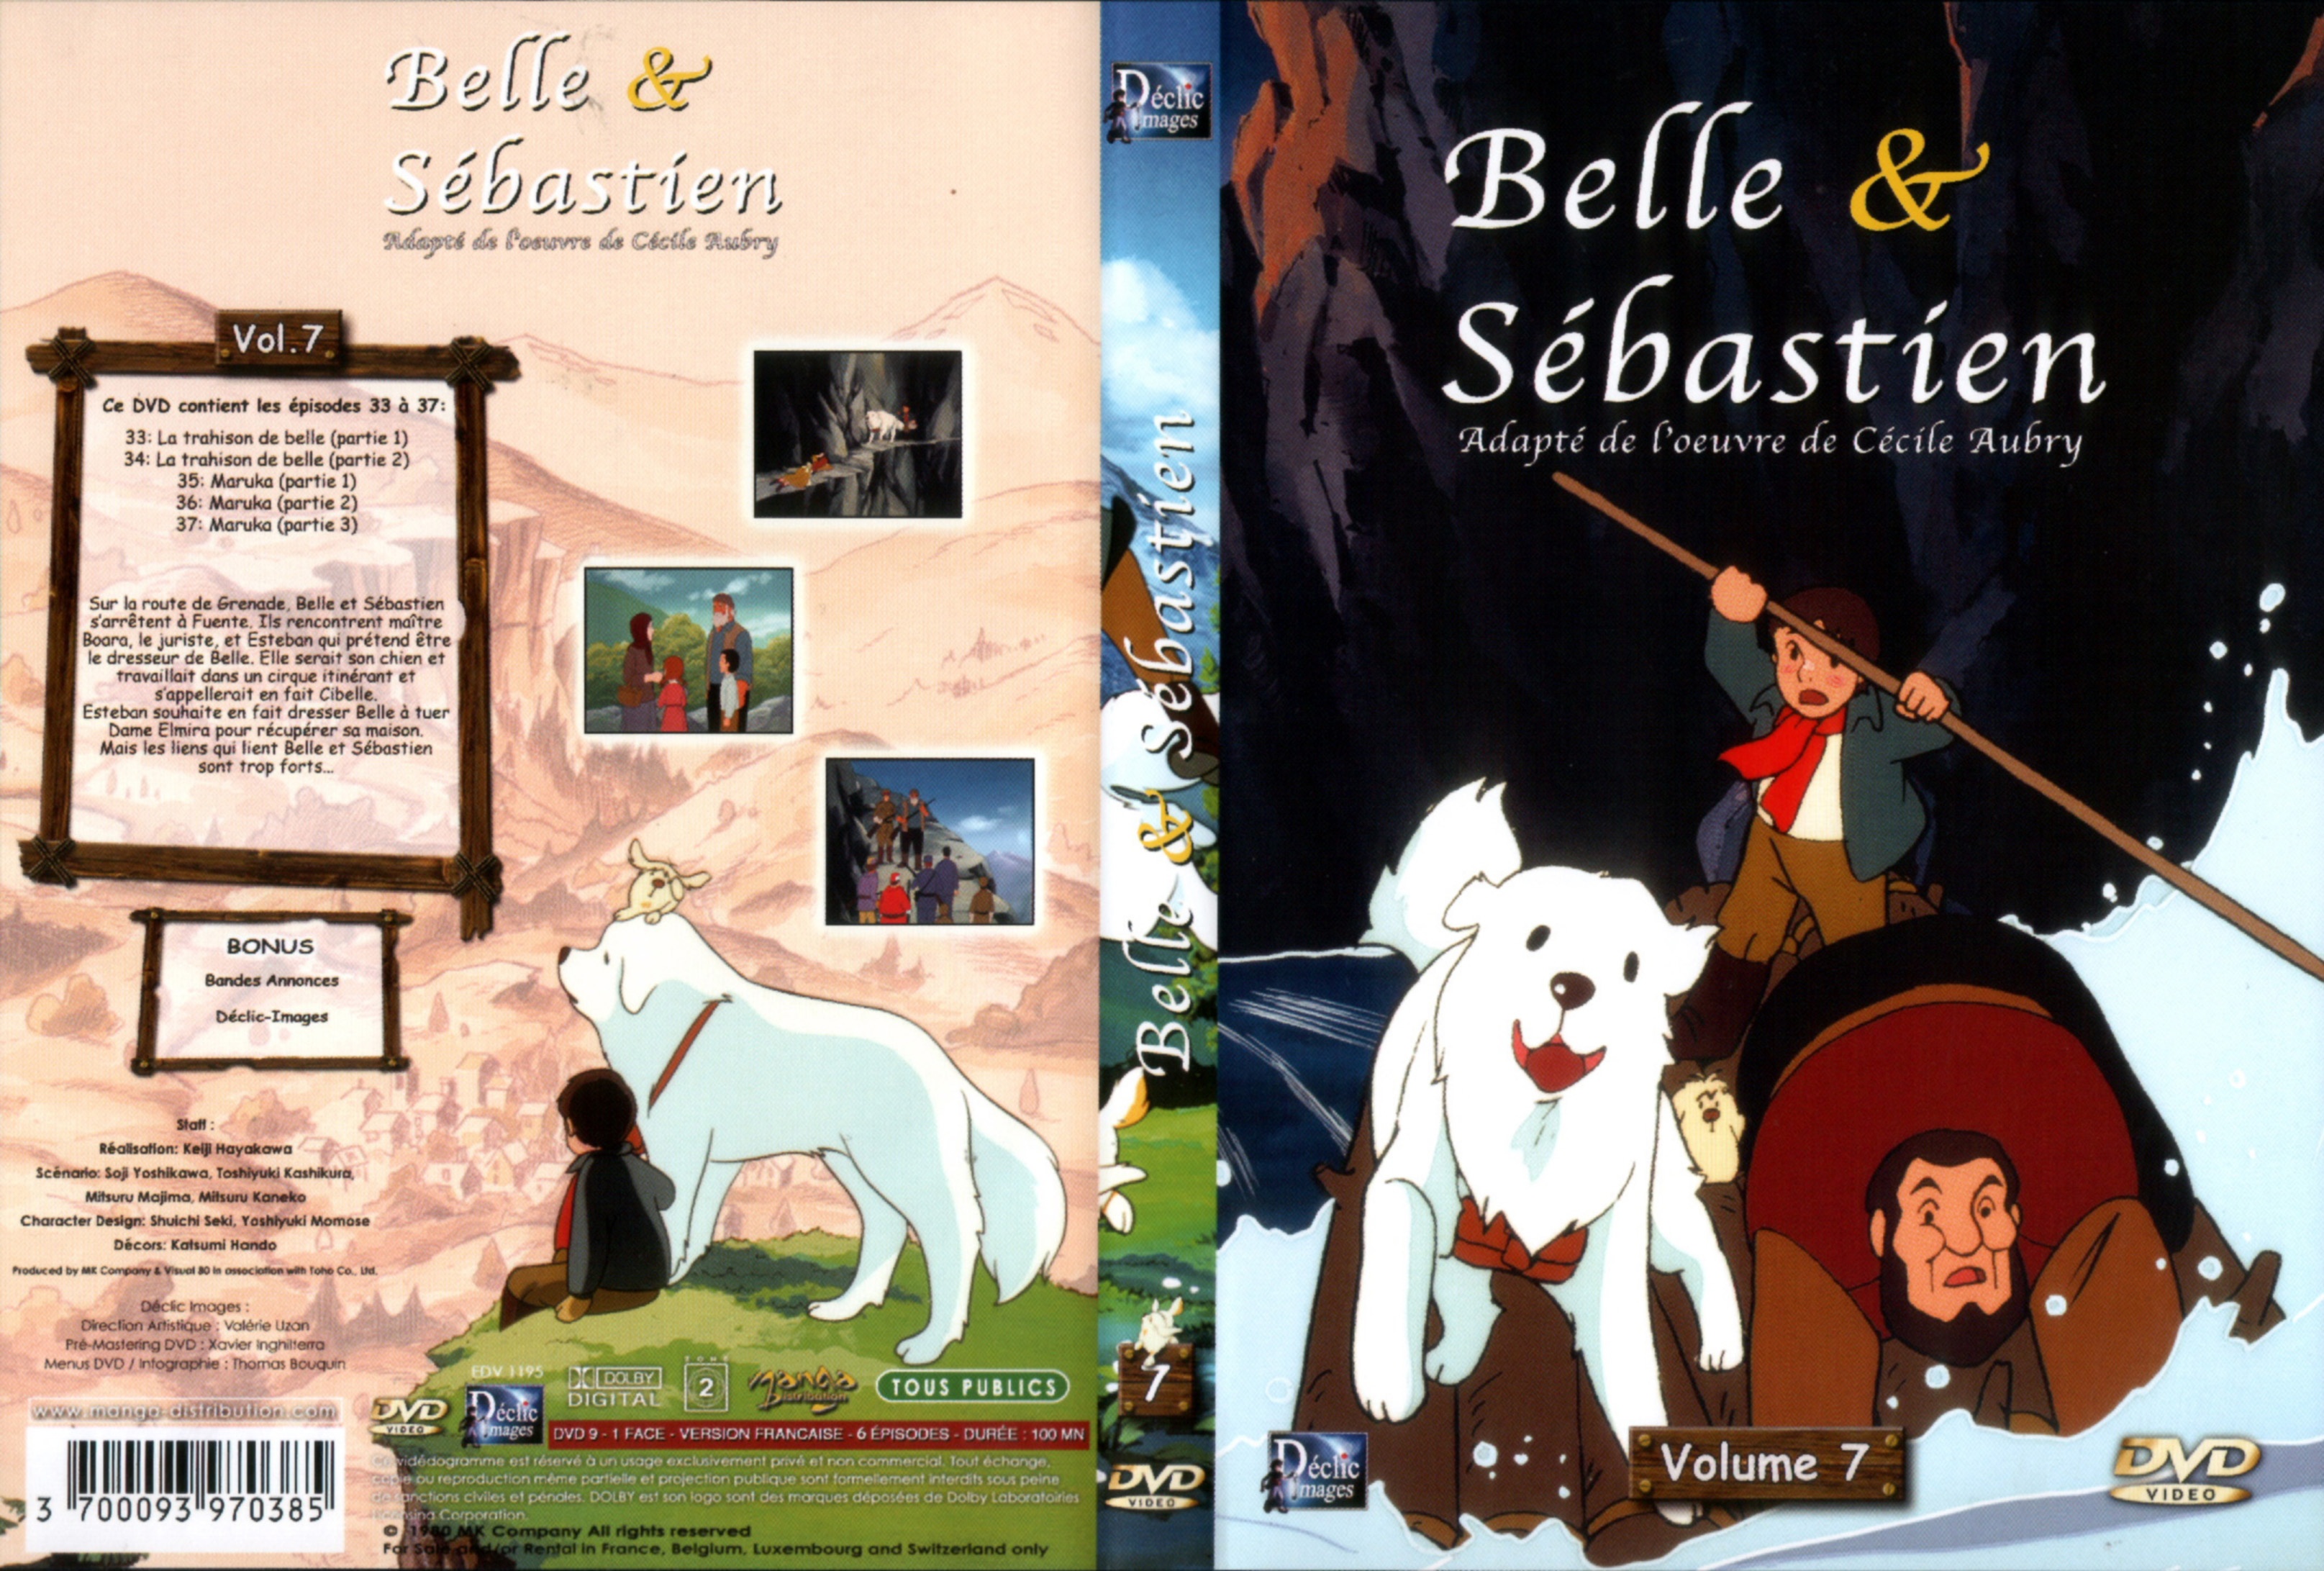 Jaquette DVD Belle et Sebastien DVD 07